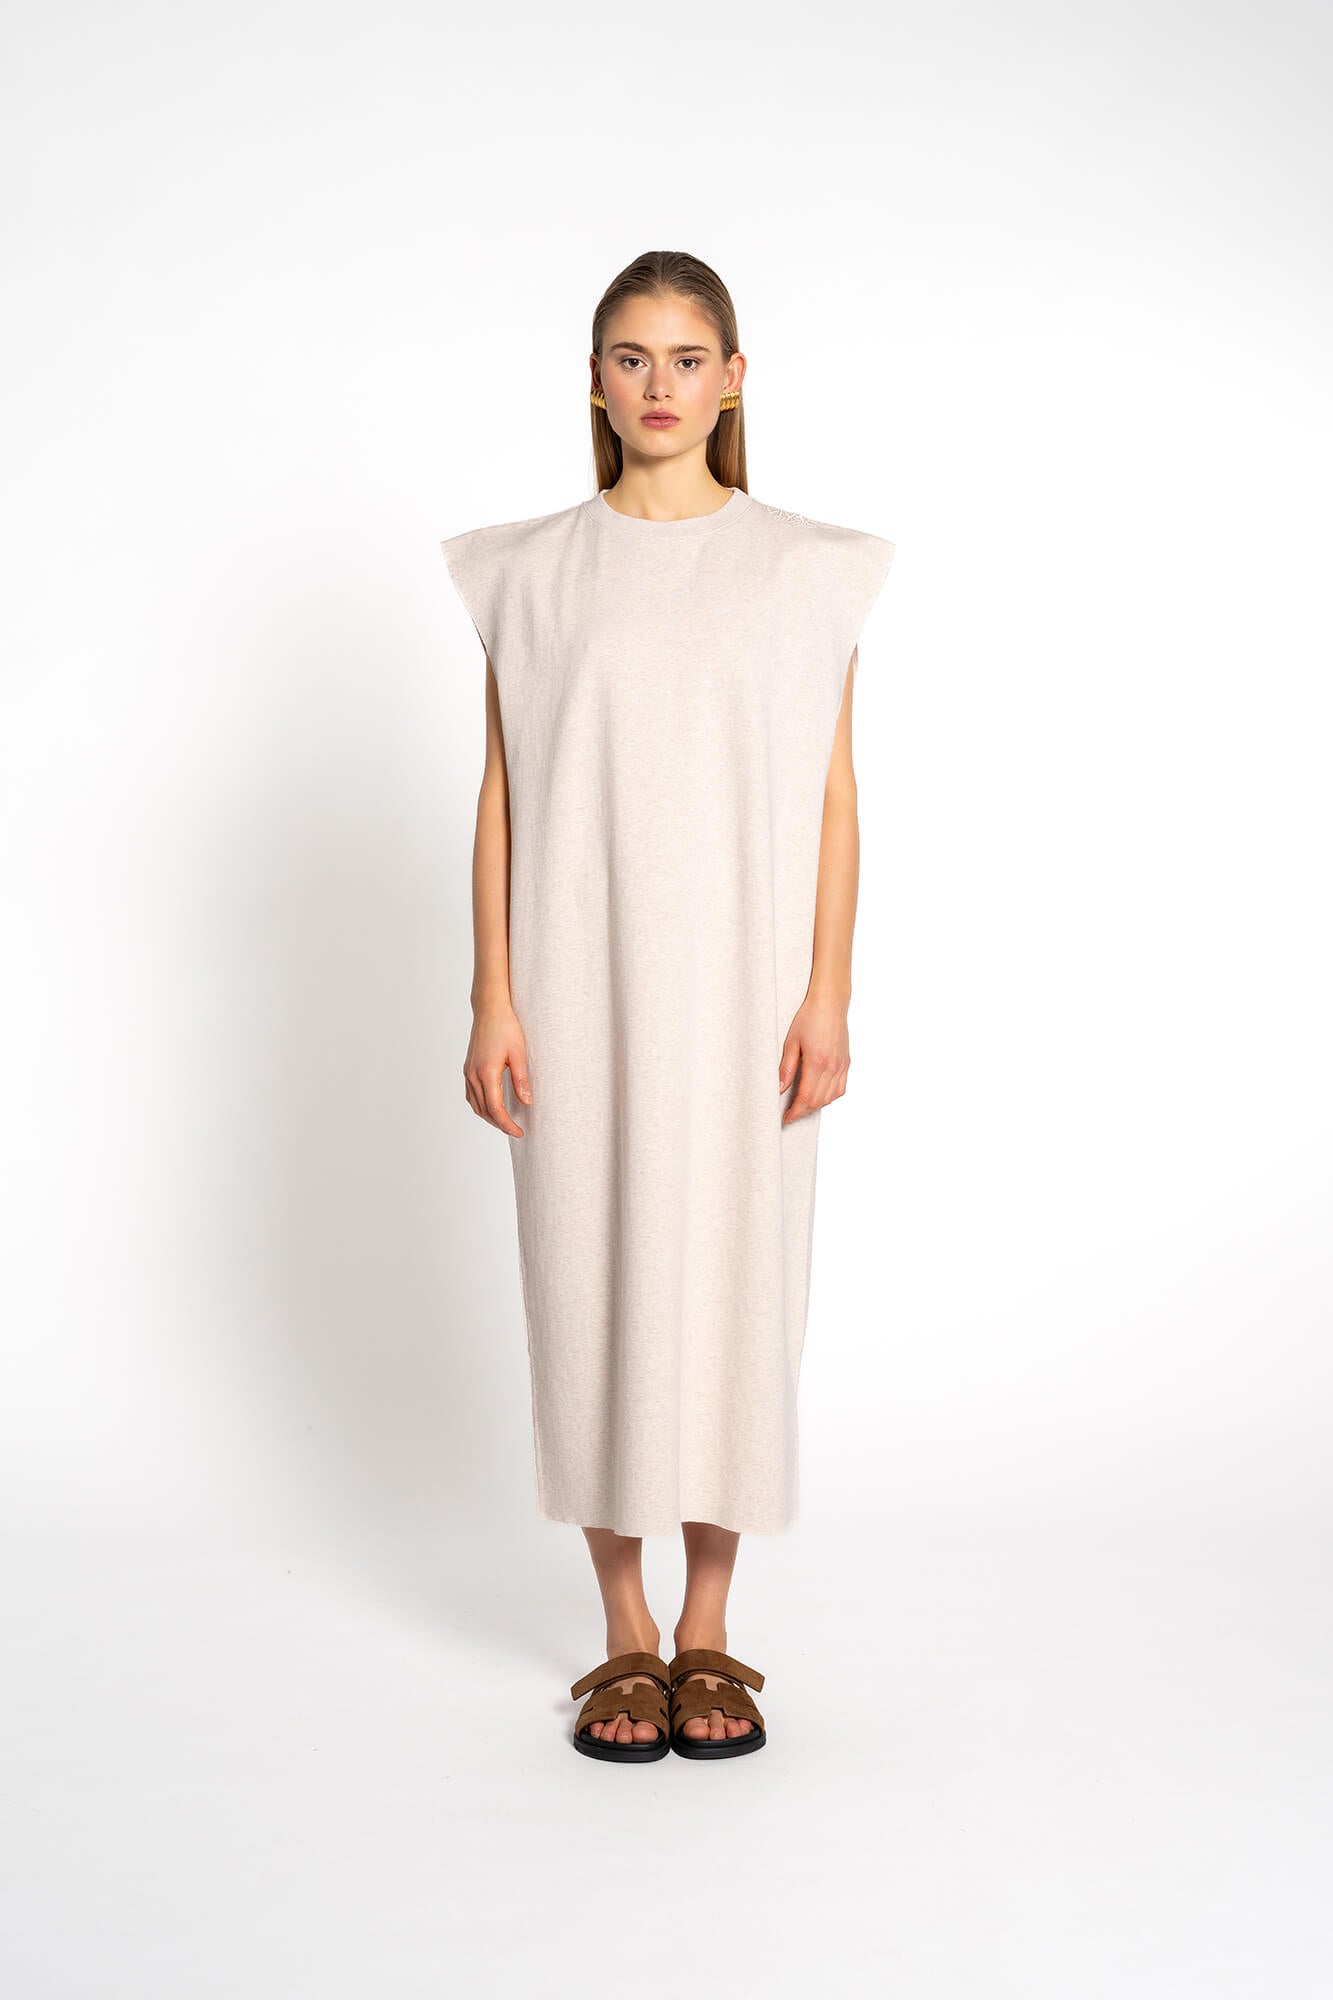 Aermelloses Kleid in beige melange by VIVAL.STUDIO